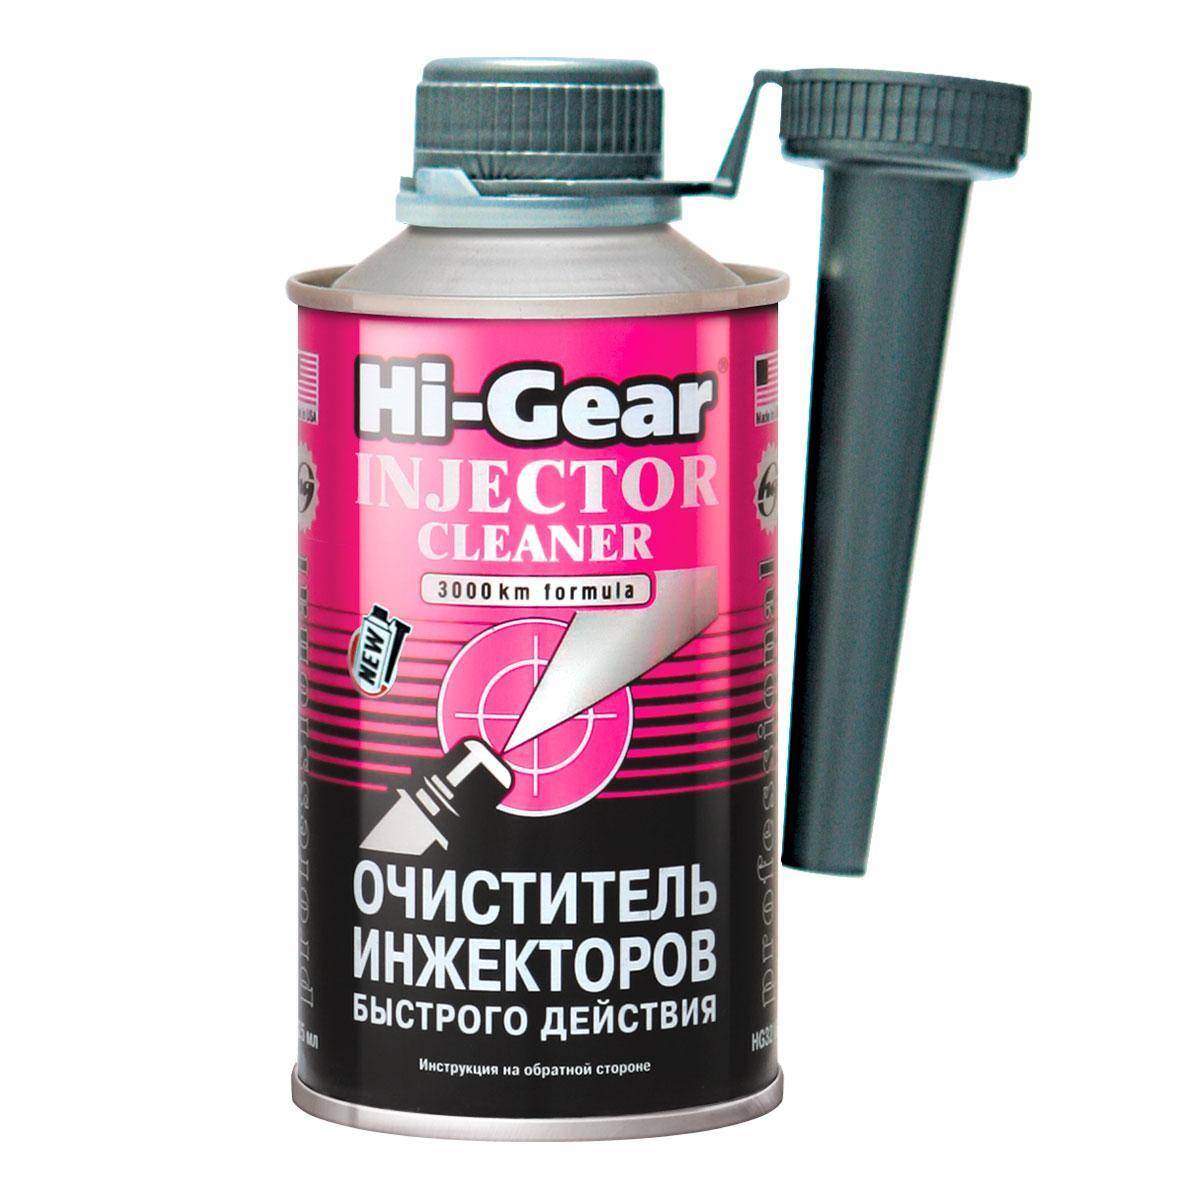 Очиститель инжектора hi-gear